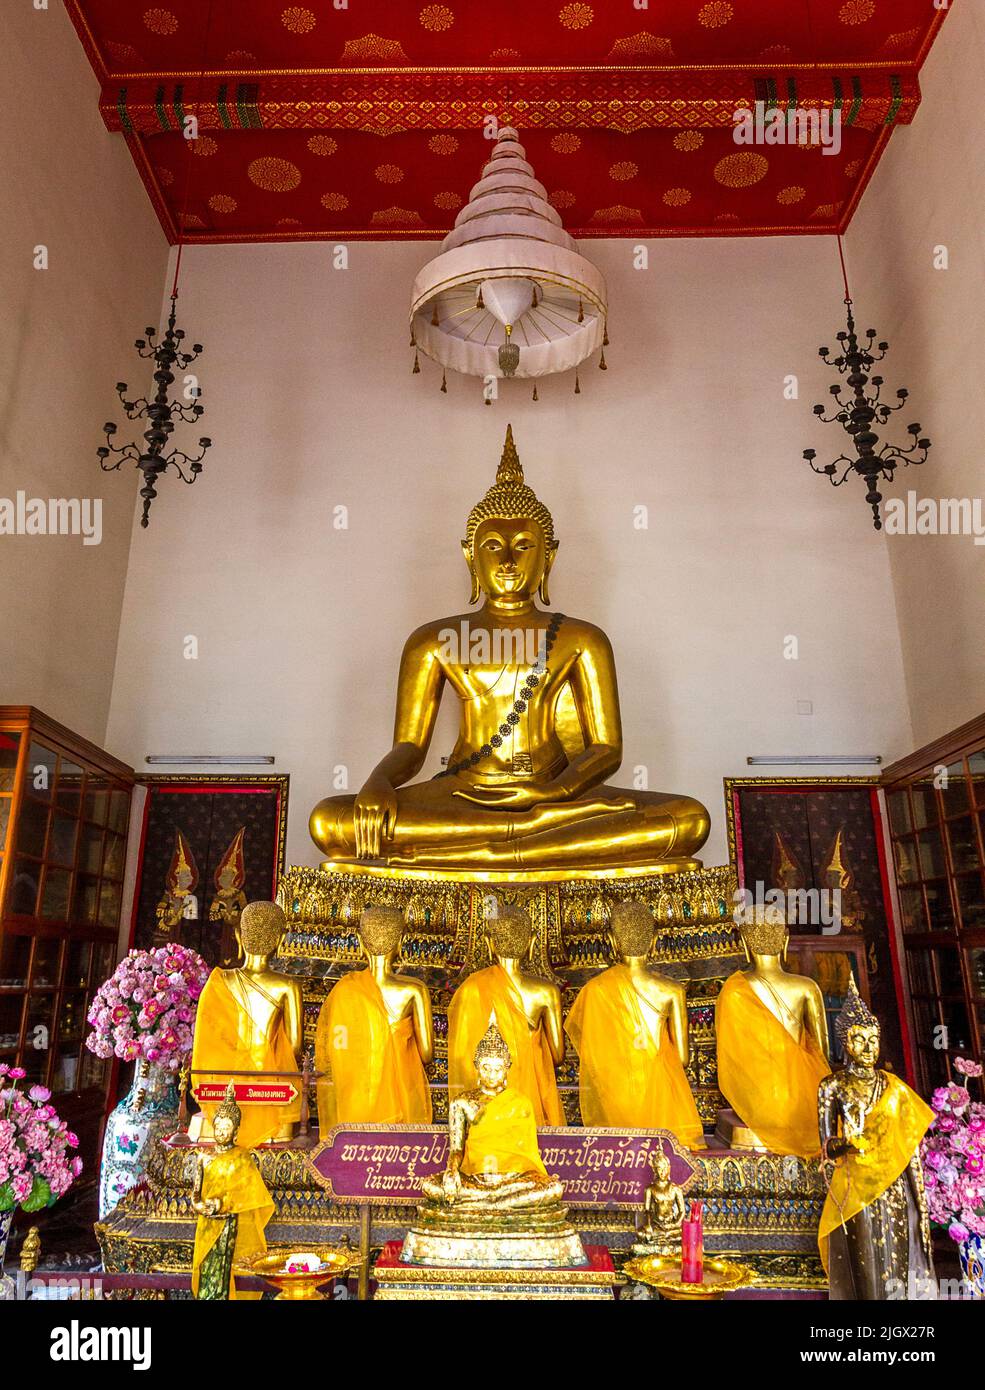 Wat po è una popolare attrazione turistica dove ci sono molti buddhas d'oro e anche uno reclinabile. Foto Stock